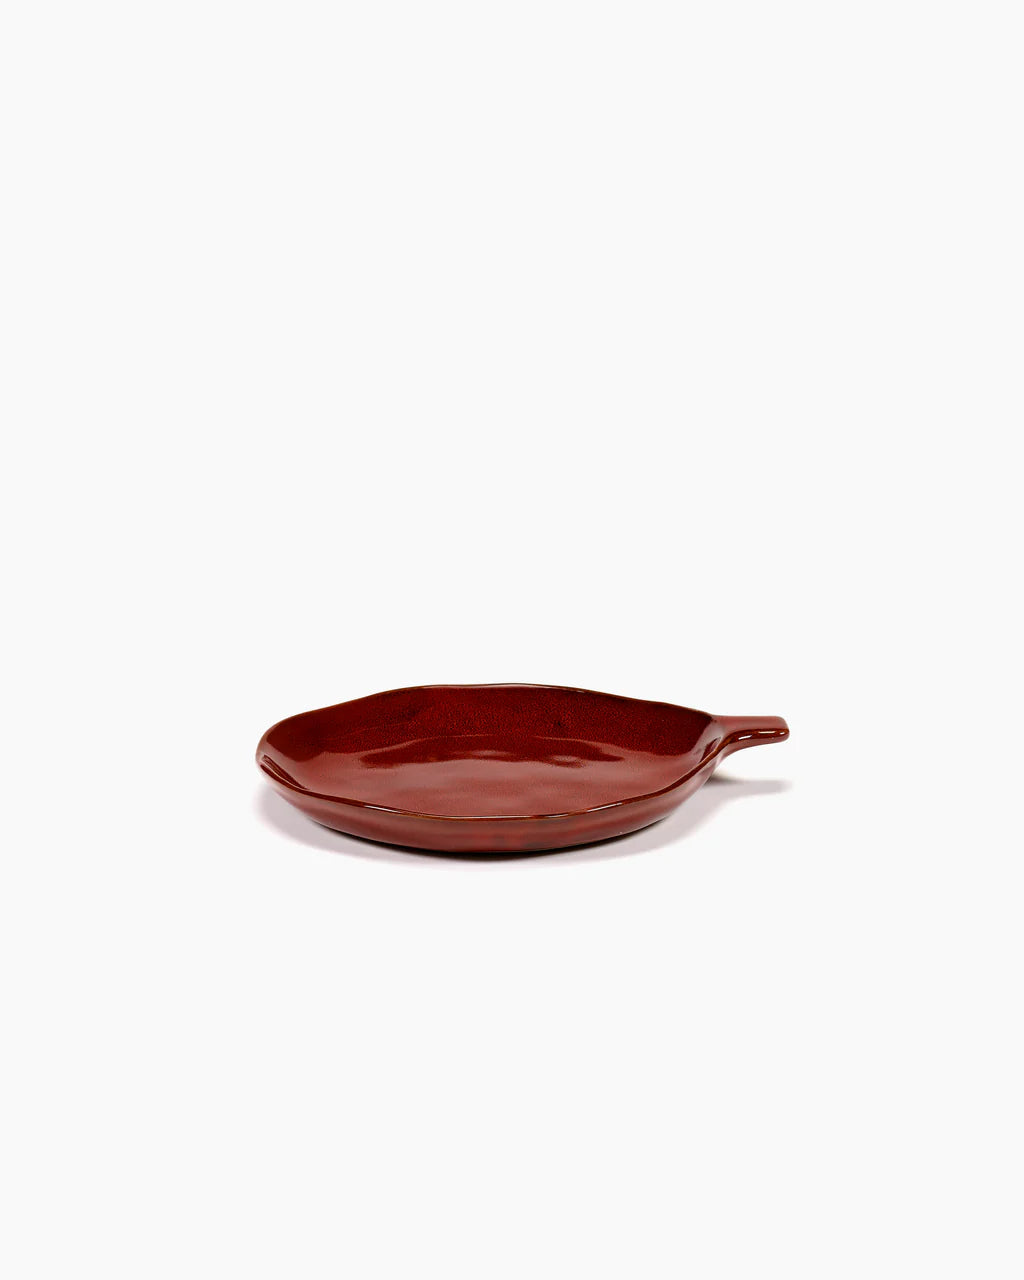 Plate with handle - La Mère by Marie Michielssen - Venetian red